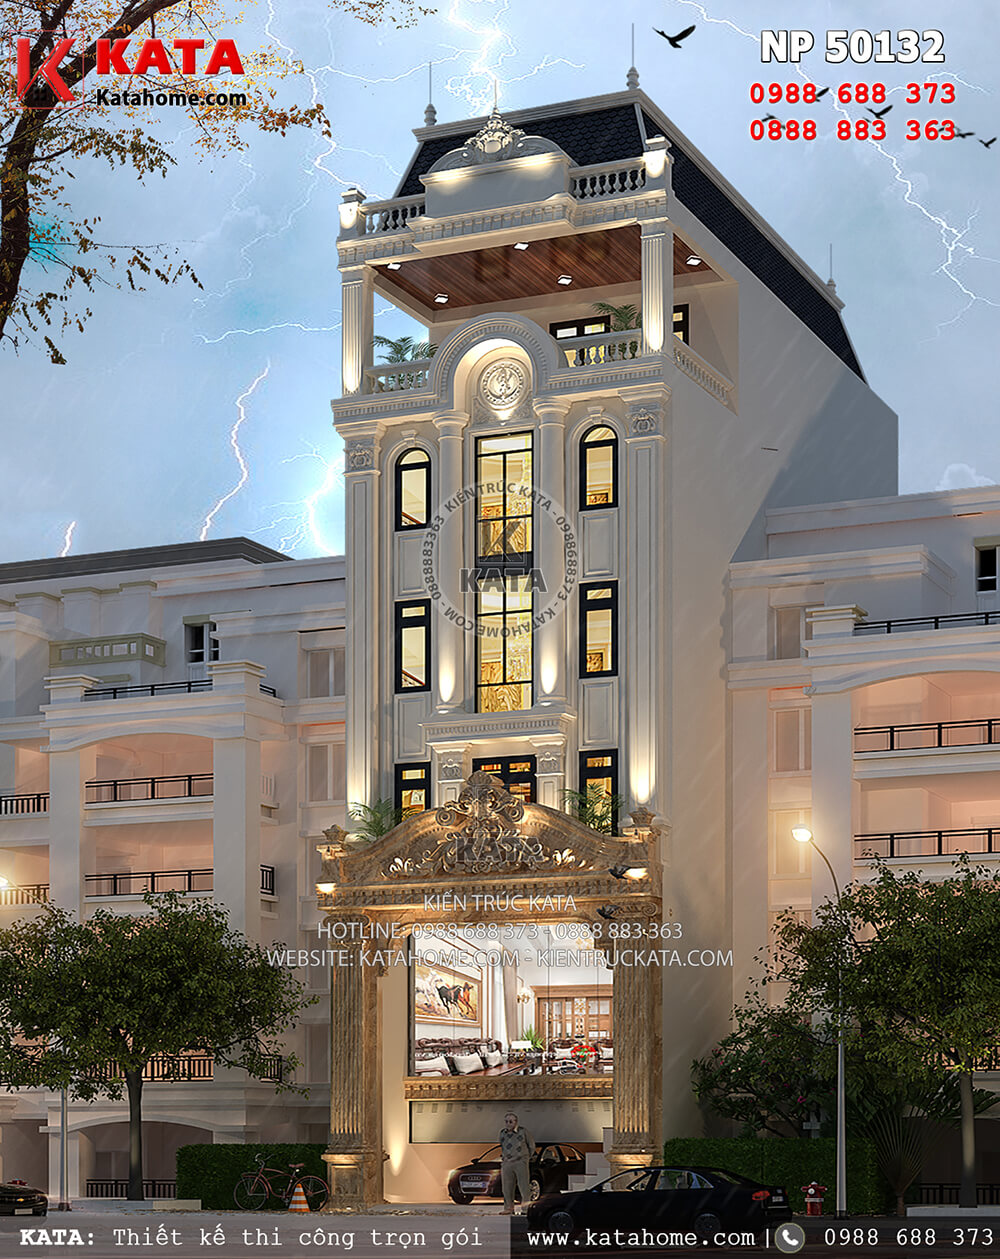 Một góc nhìn của mẫu thiết kế khách sạn 2 sao kiến trúc tân cổ điển tại Nha Trang